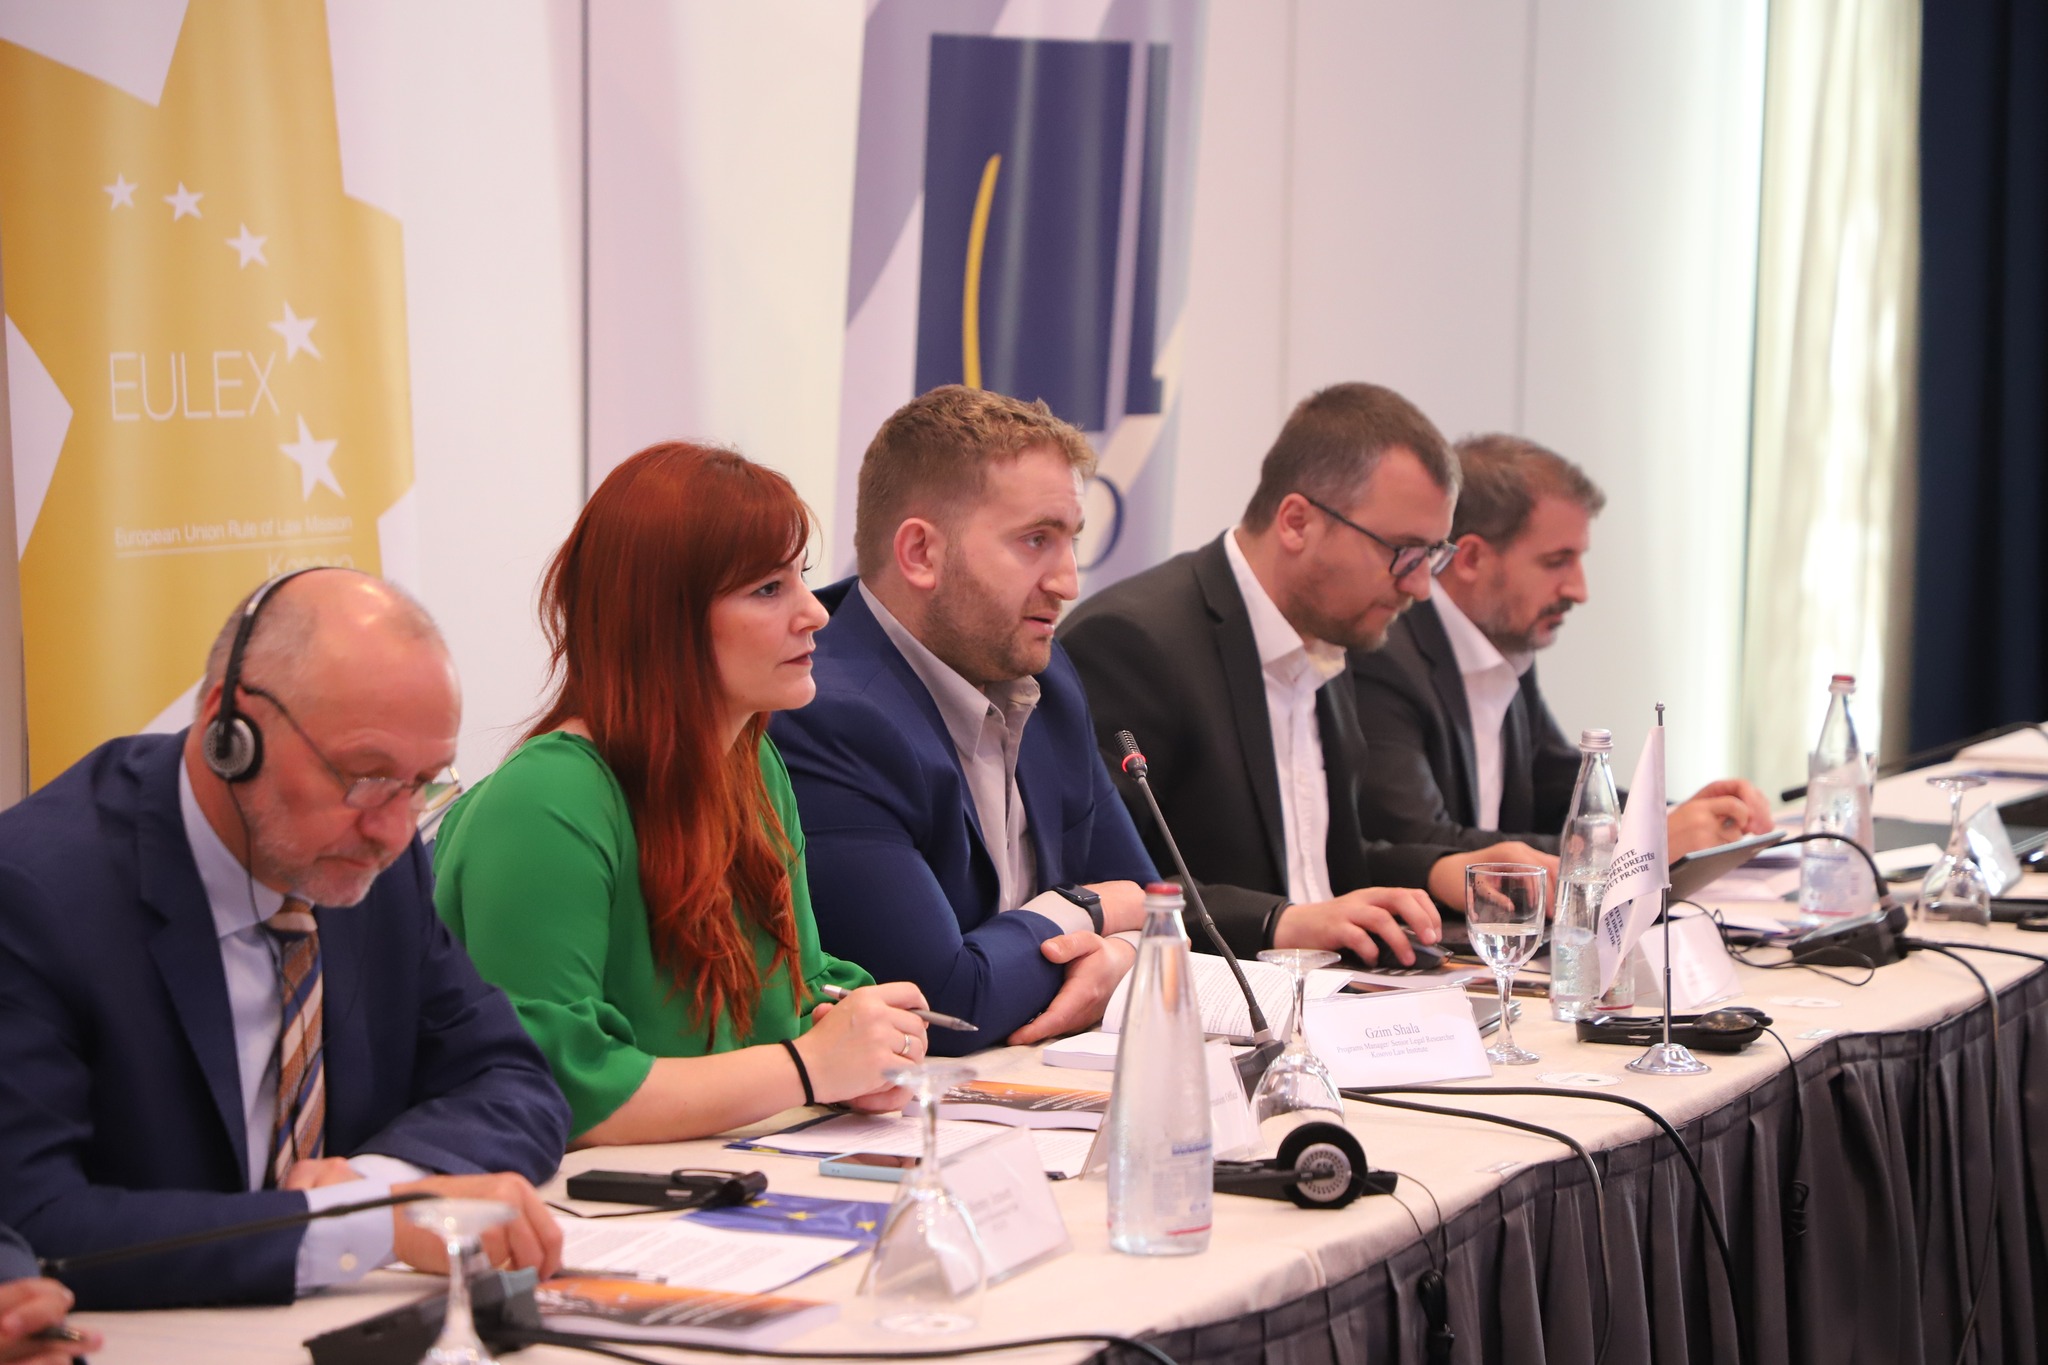 EULEX-i dhe Instituti i Kosovës për Drejtësi prezantojnë raportin e tretë të monitorimit të seancave dëgjimore nga qytetarët  